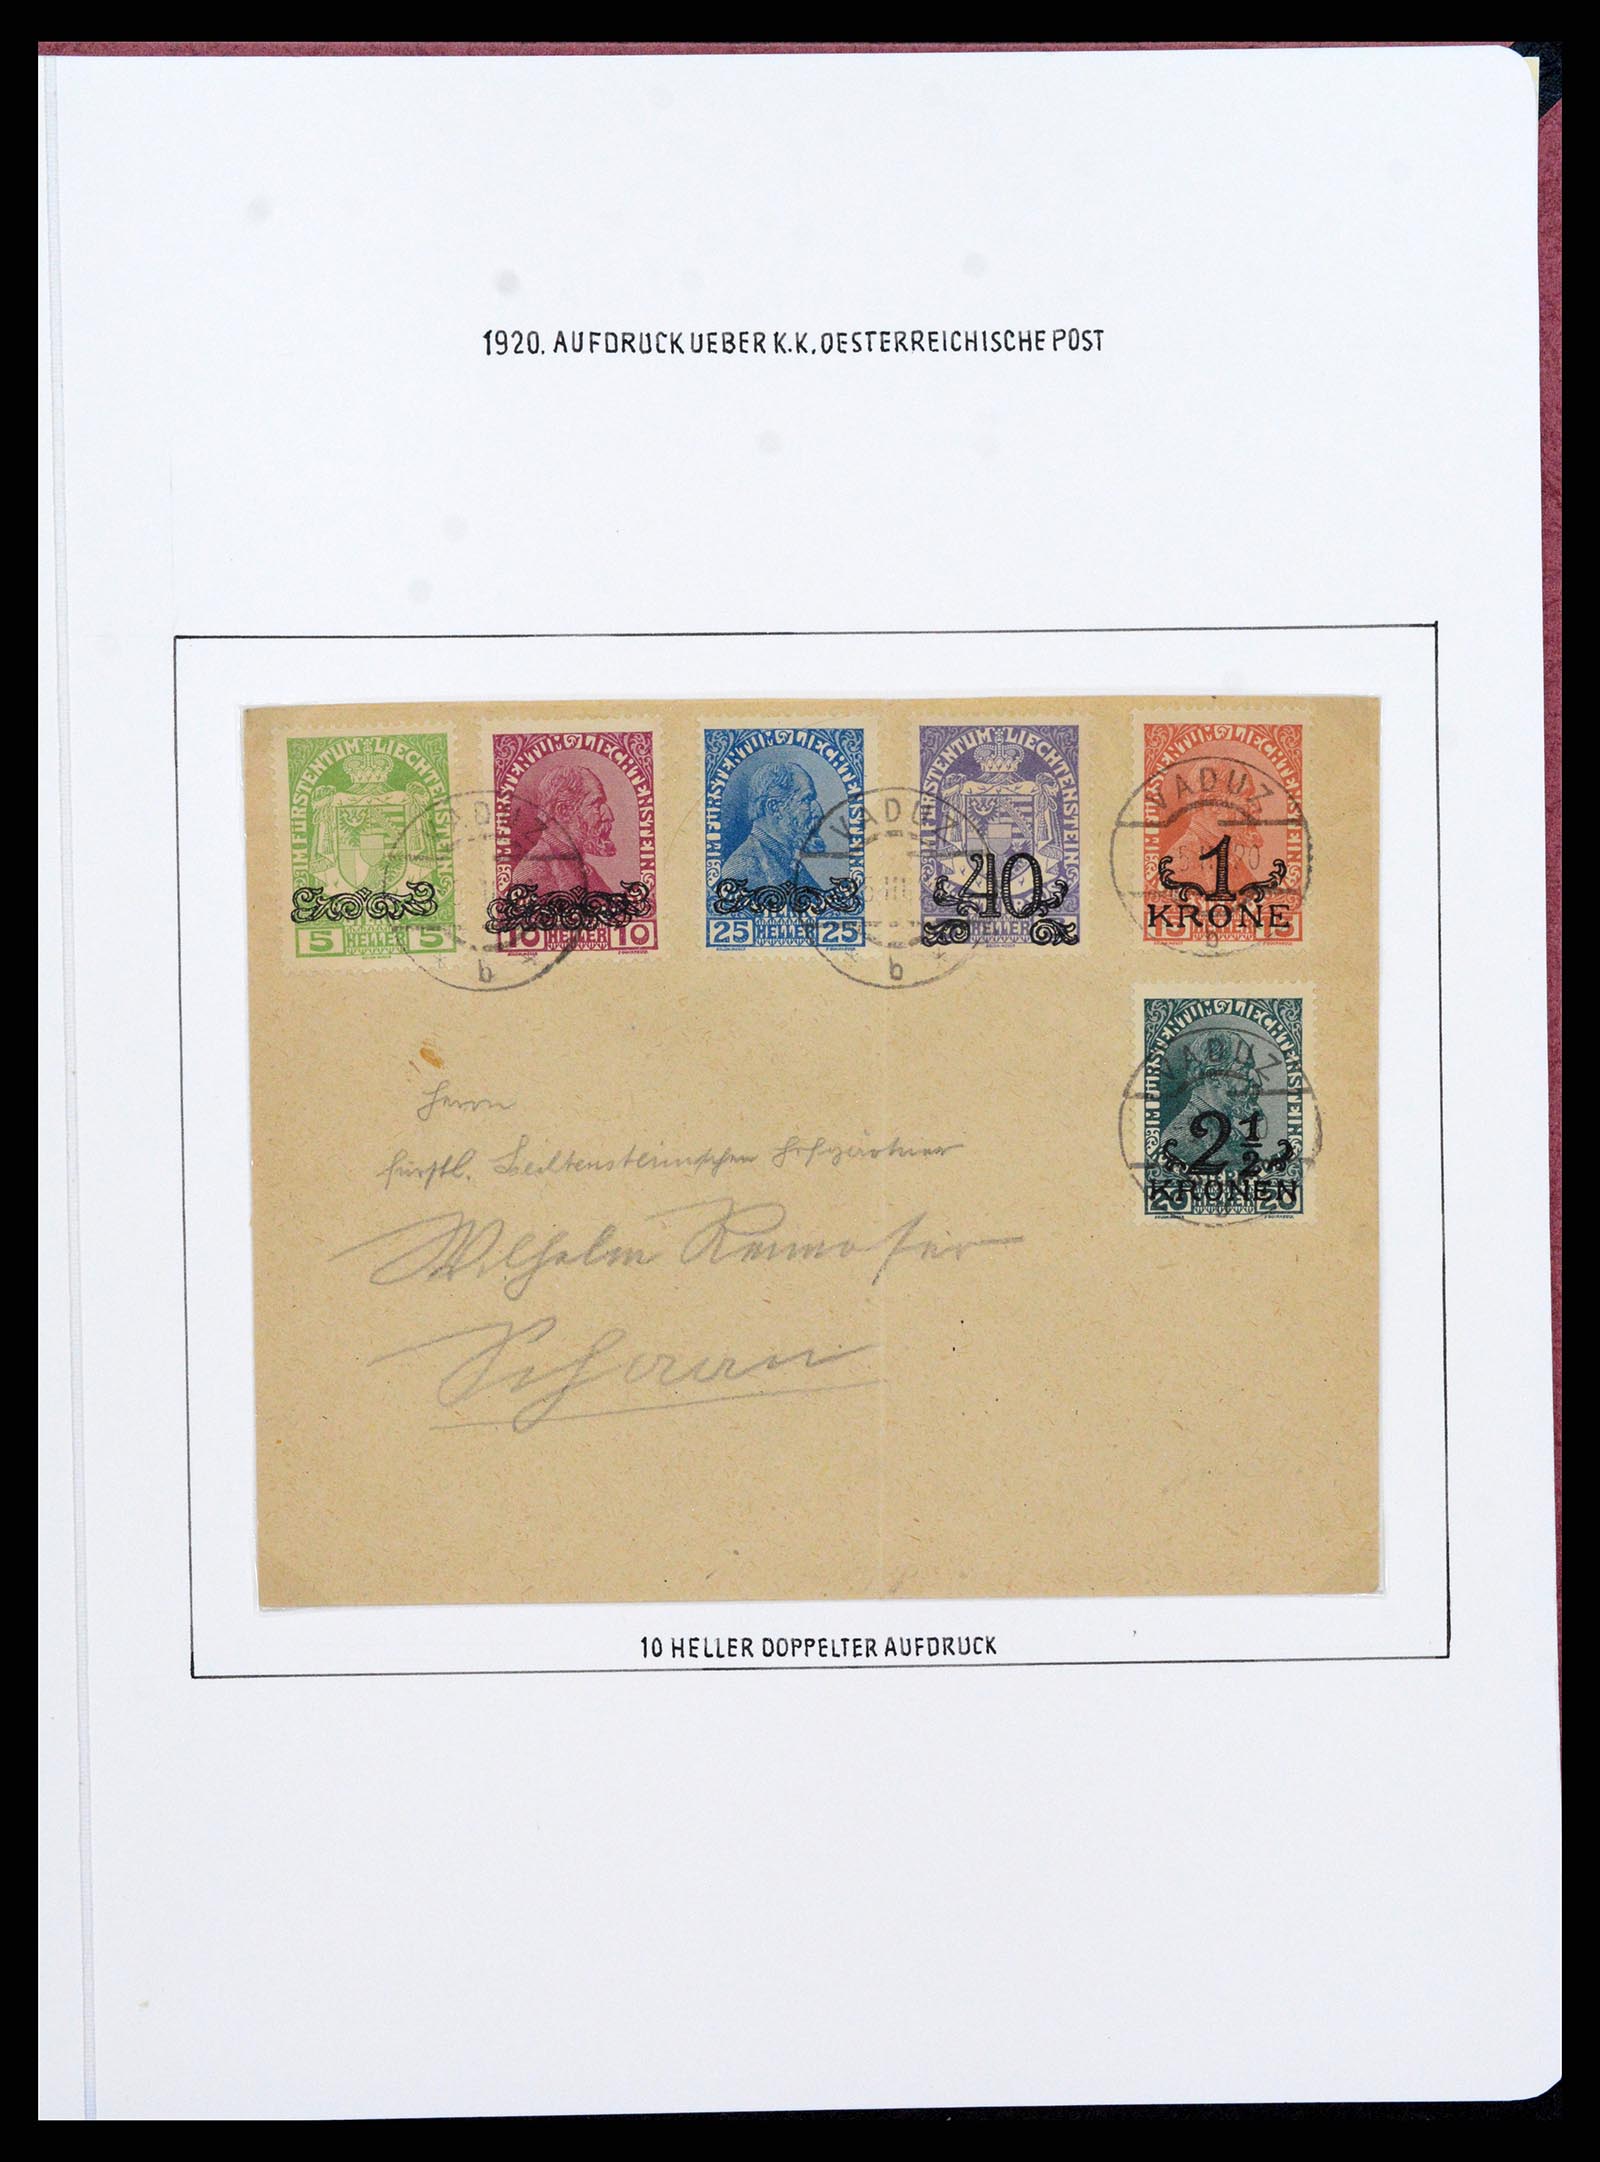 37150 0046 - Stamp collection 37150 Liechtenstein supercollection 1912-1962.